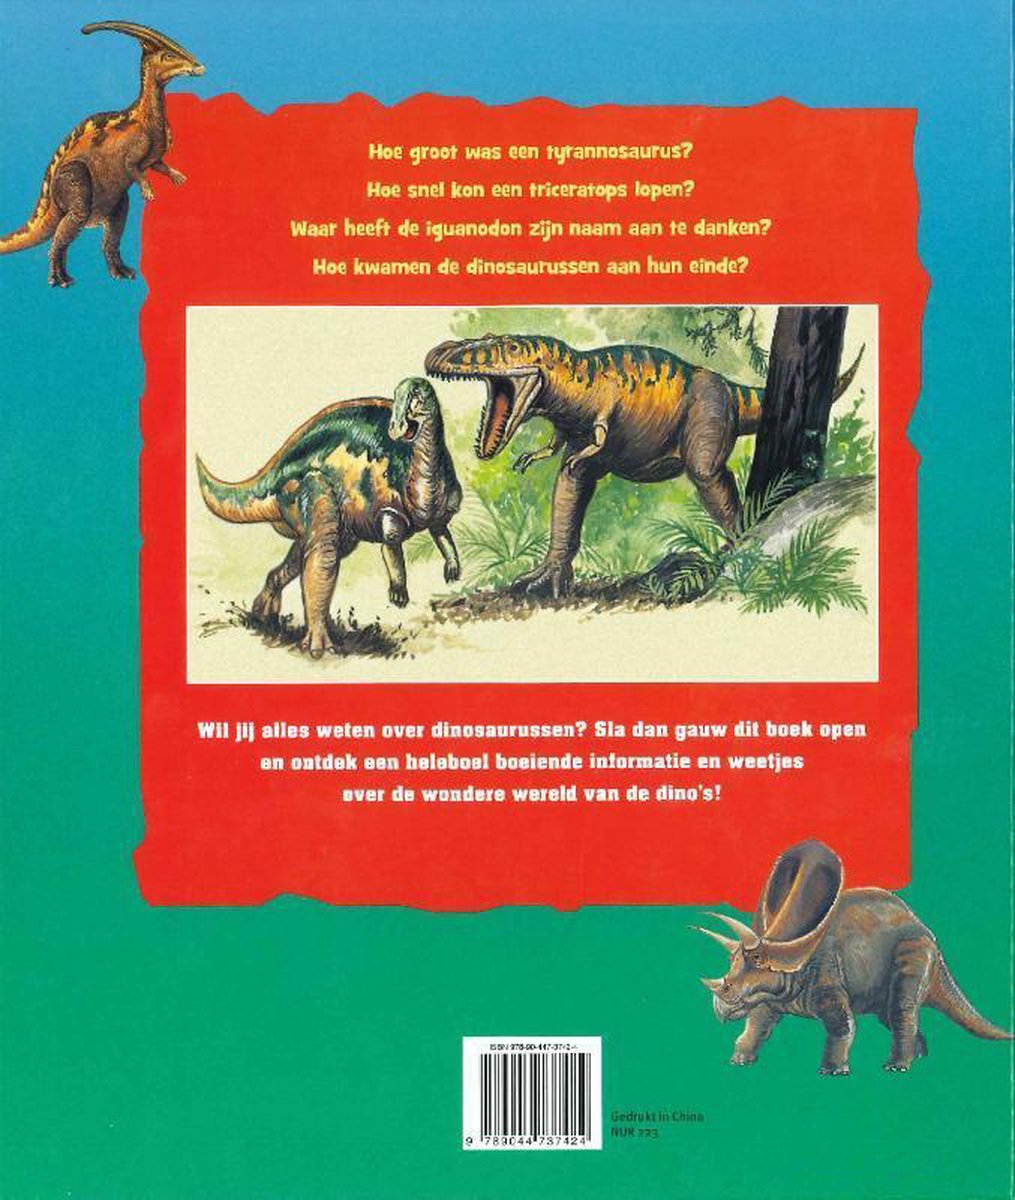 verkenner overschot belediging Mijn eerste boek over dinosaurussen, Stephanie Ledu | 9789044737424 |  Boeken | bol.com